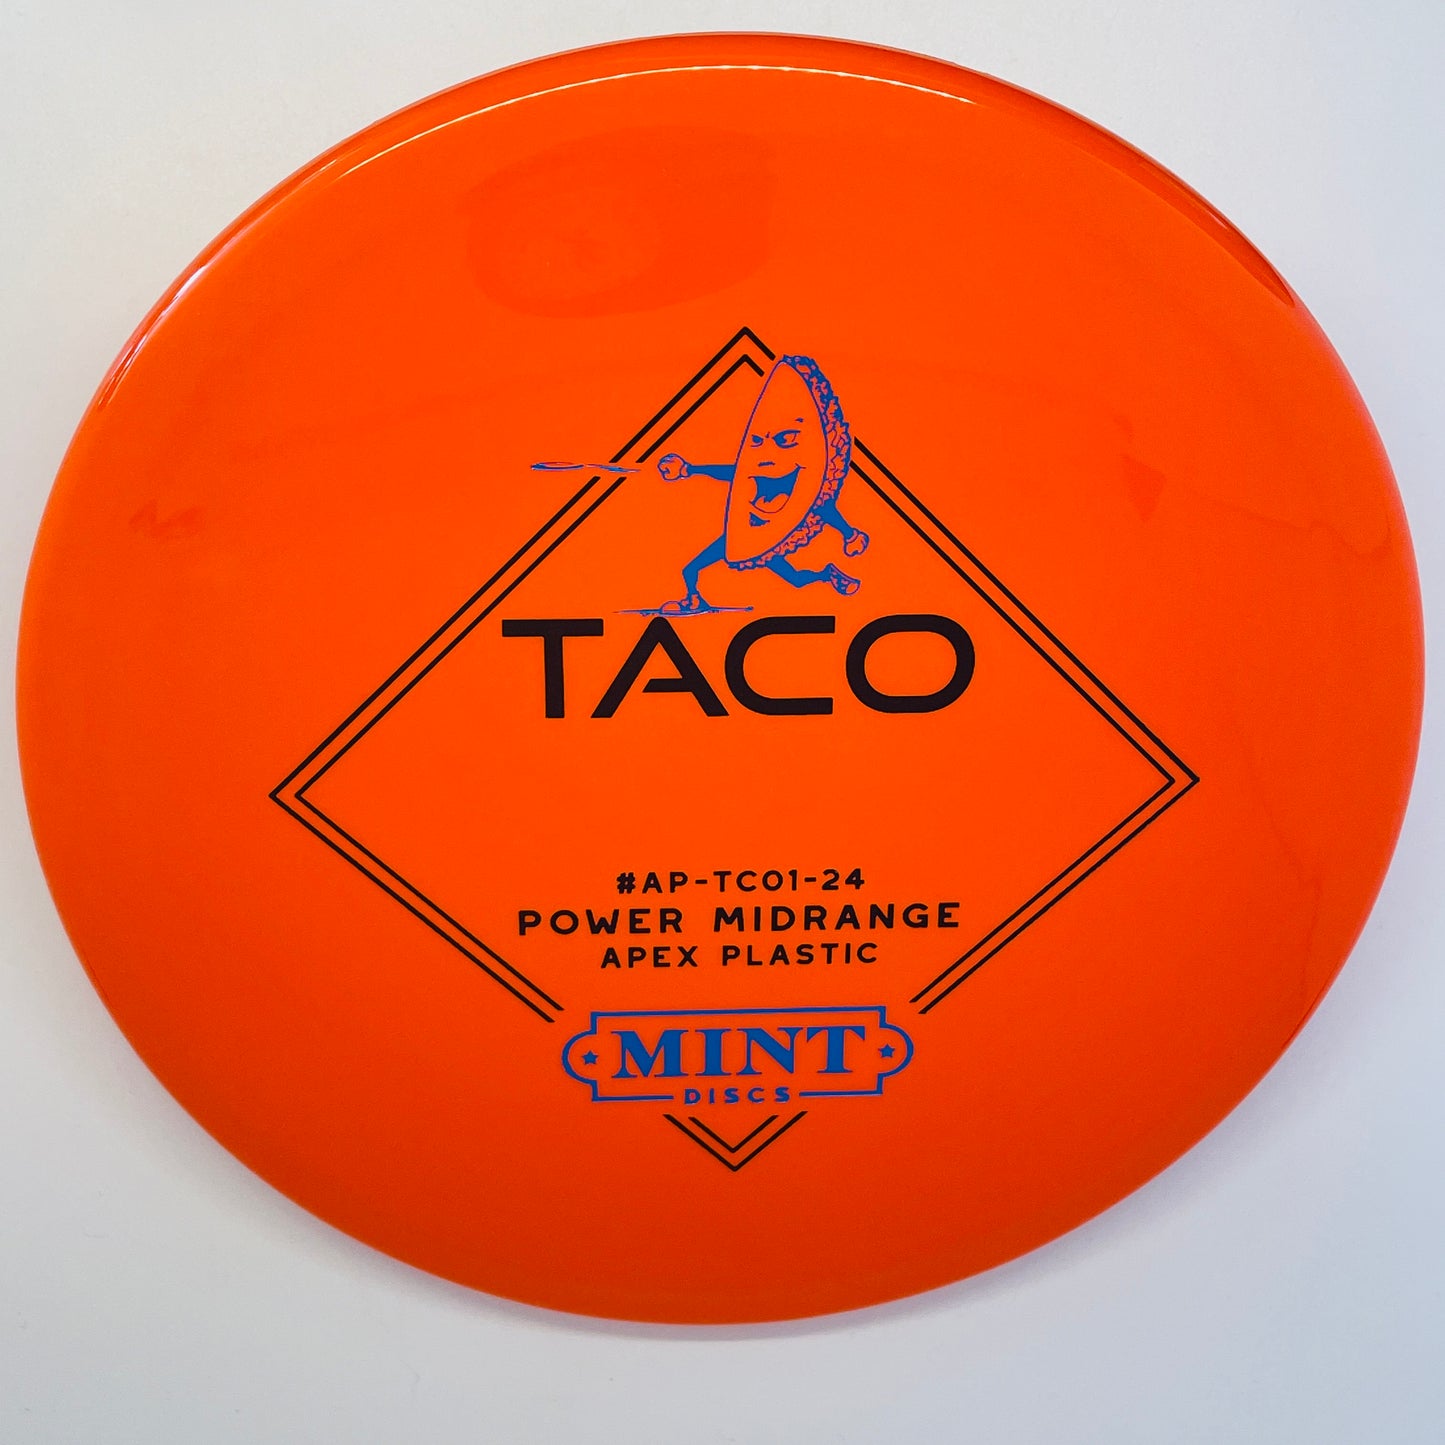 Mint Discs Taco Apex - Midrange